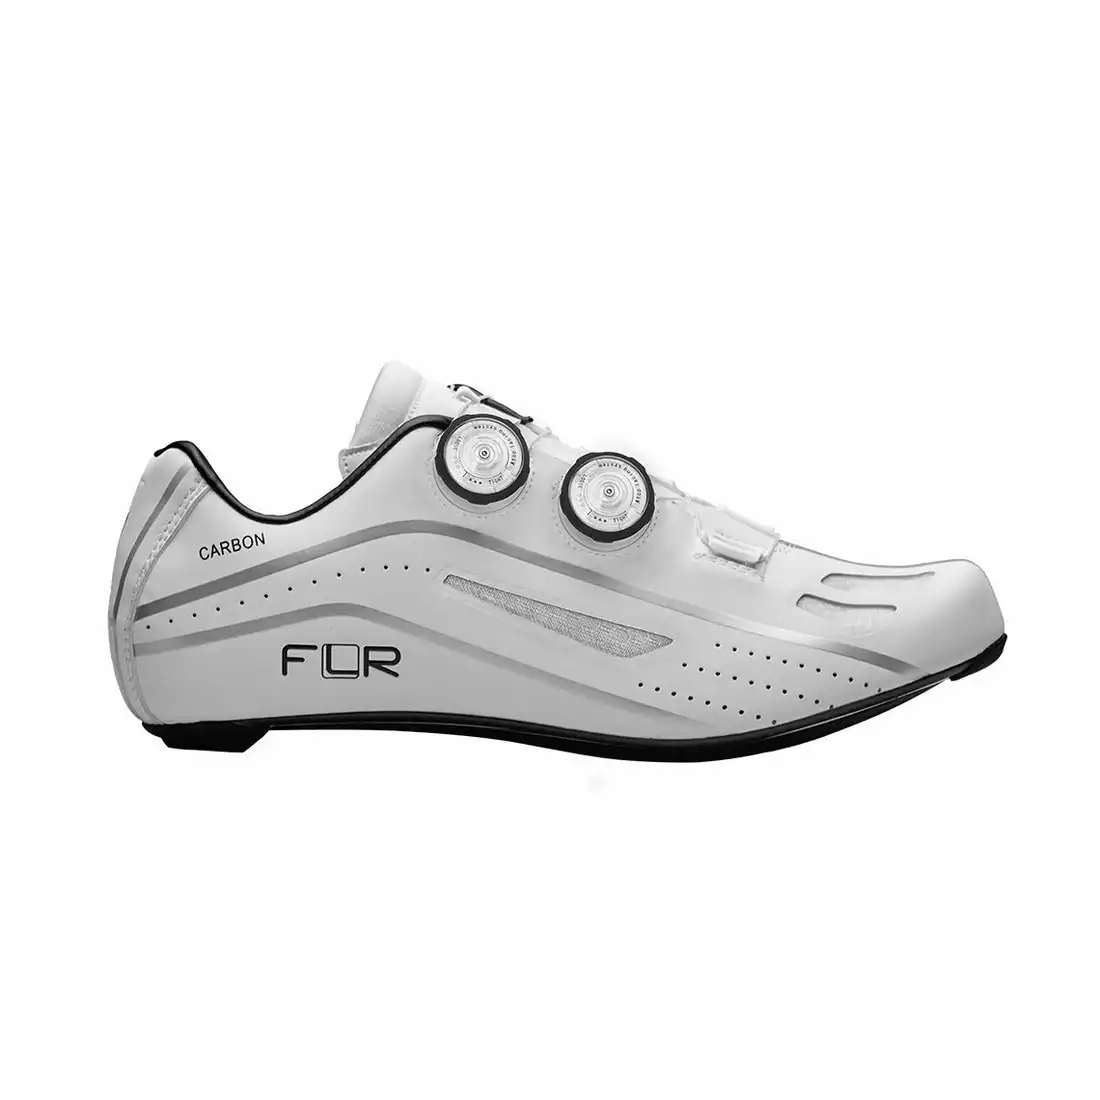 FLR F-XX szosowe buty rowerowe, full carbon, białe